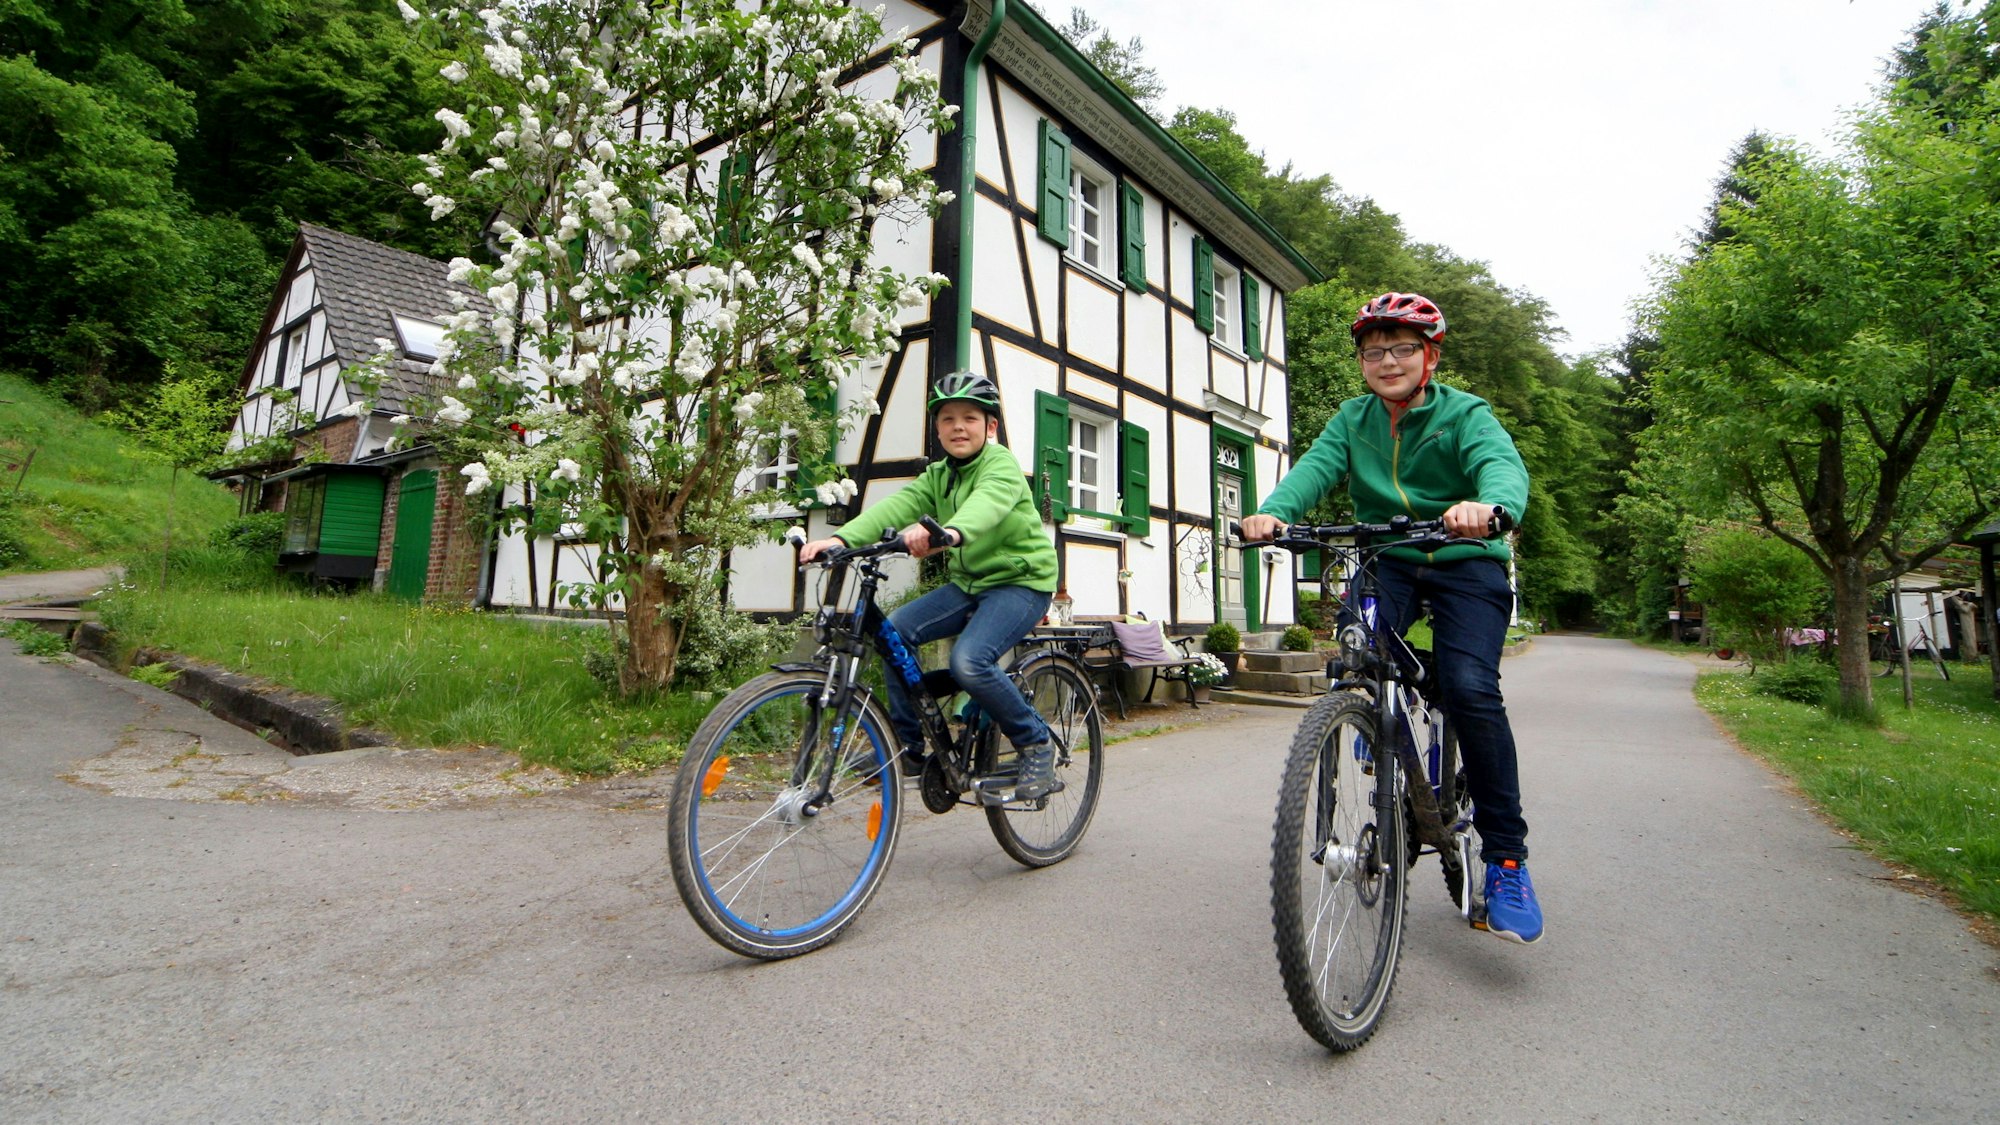 Unten am Mühlenweg ist die Radwelt noch in Ordnung, aber von hier führen nur steile Wanderwege hinauf nach Glöbusch. Zwei Kinder sitzen auf Fahrrädern.